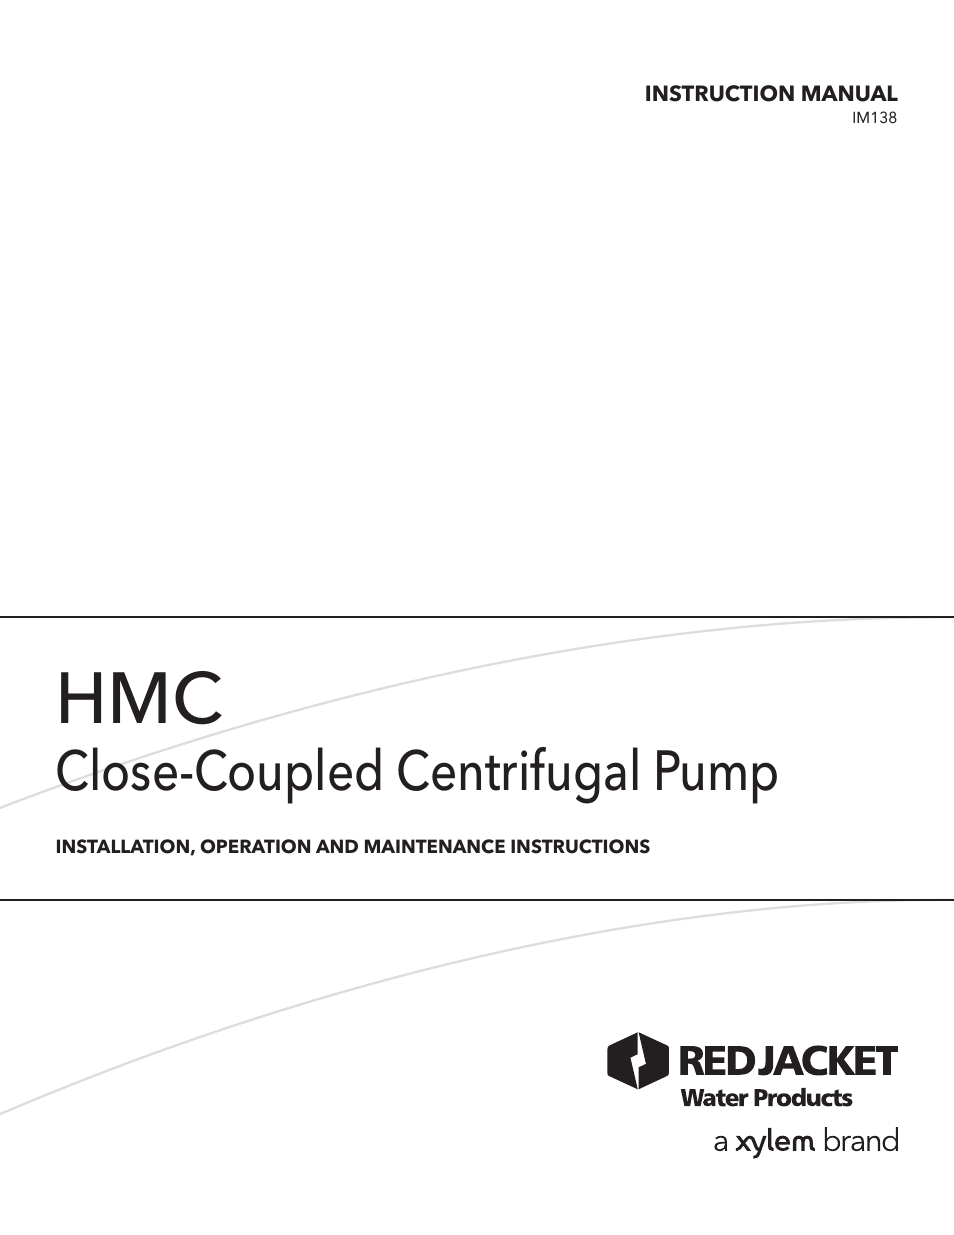 IM138 R01 HMC Close-Coupled Centrifugal Pump